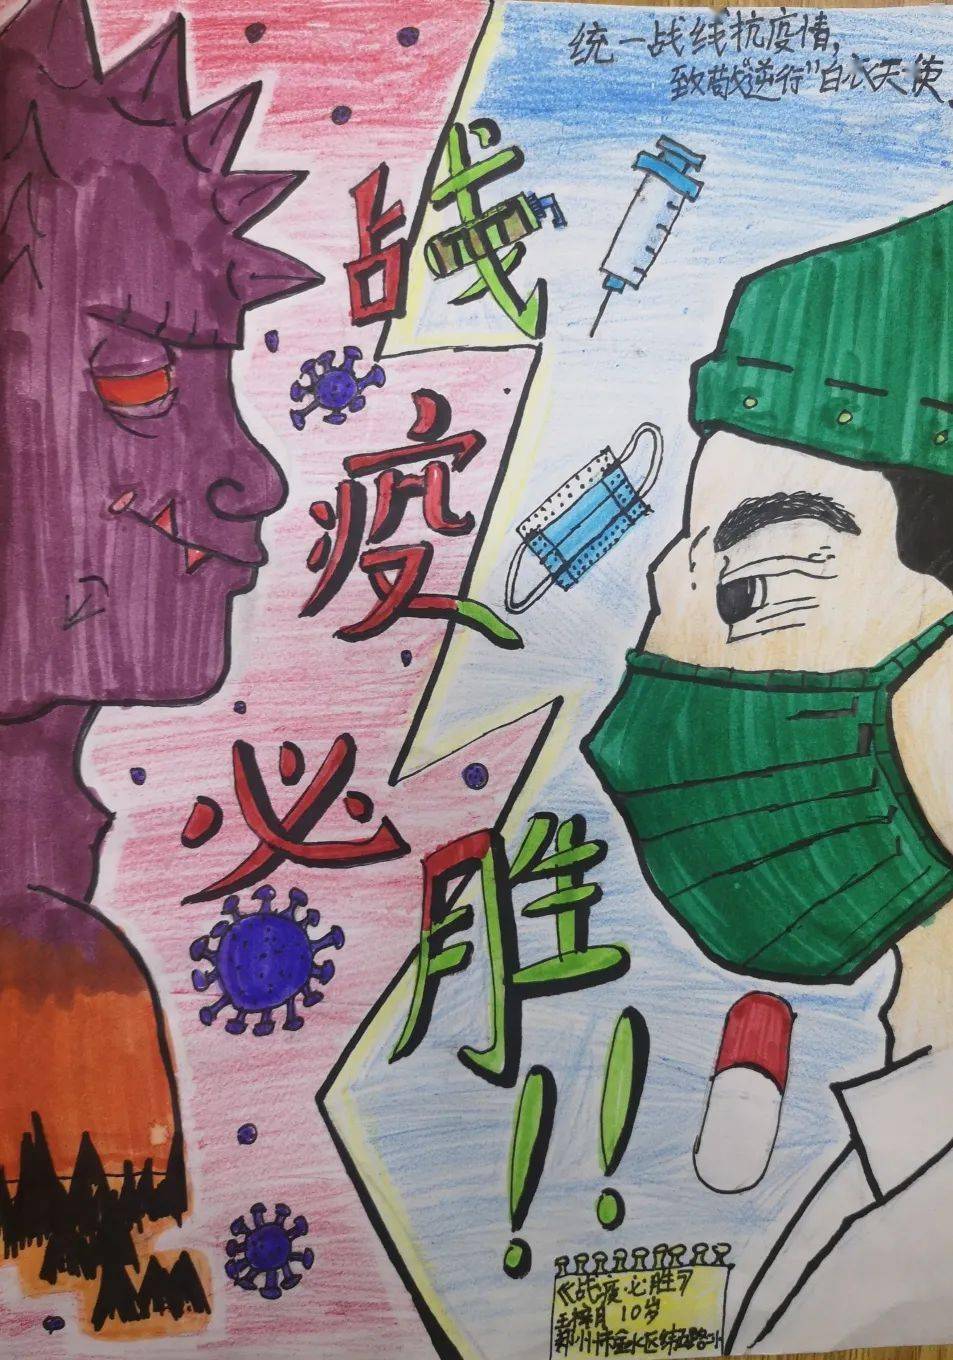 "2020国际儿童抗疫绘画艺术作品展"共收到来自中国,塞尔维亚,奥地利